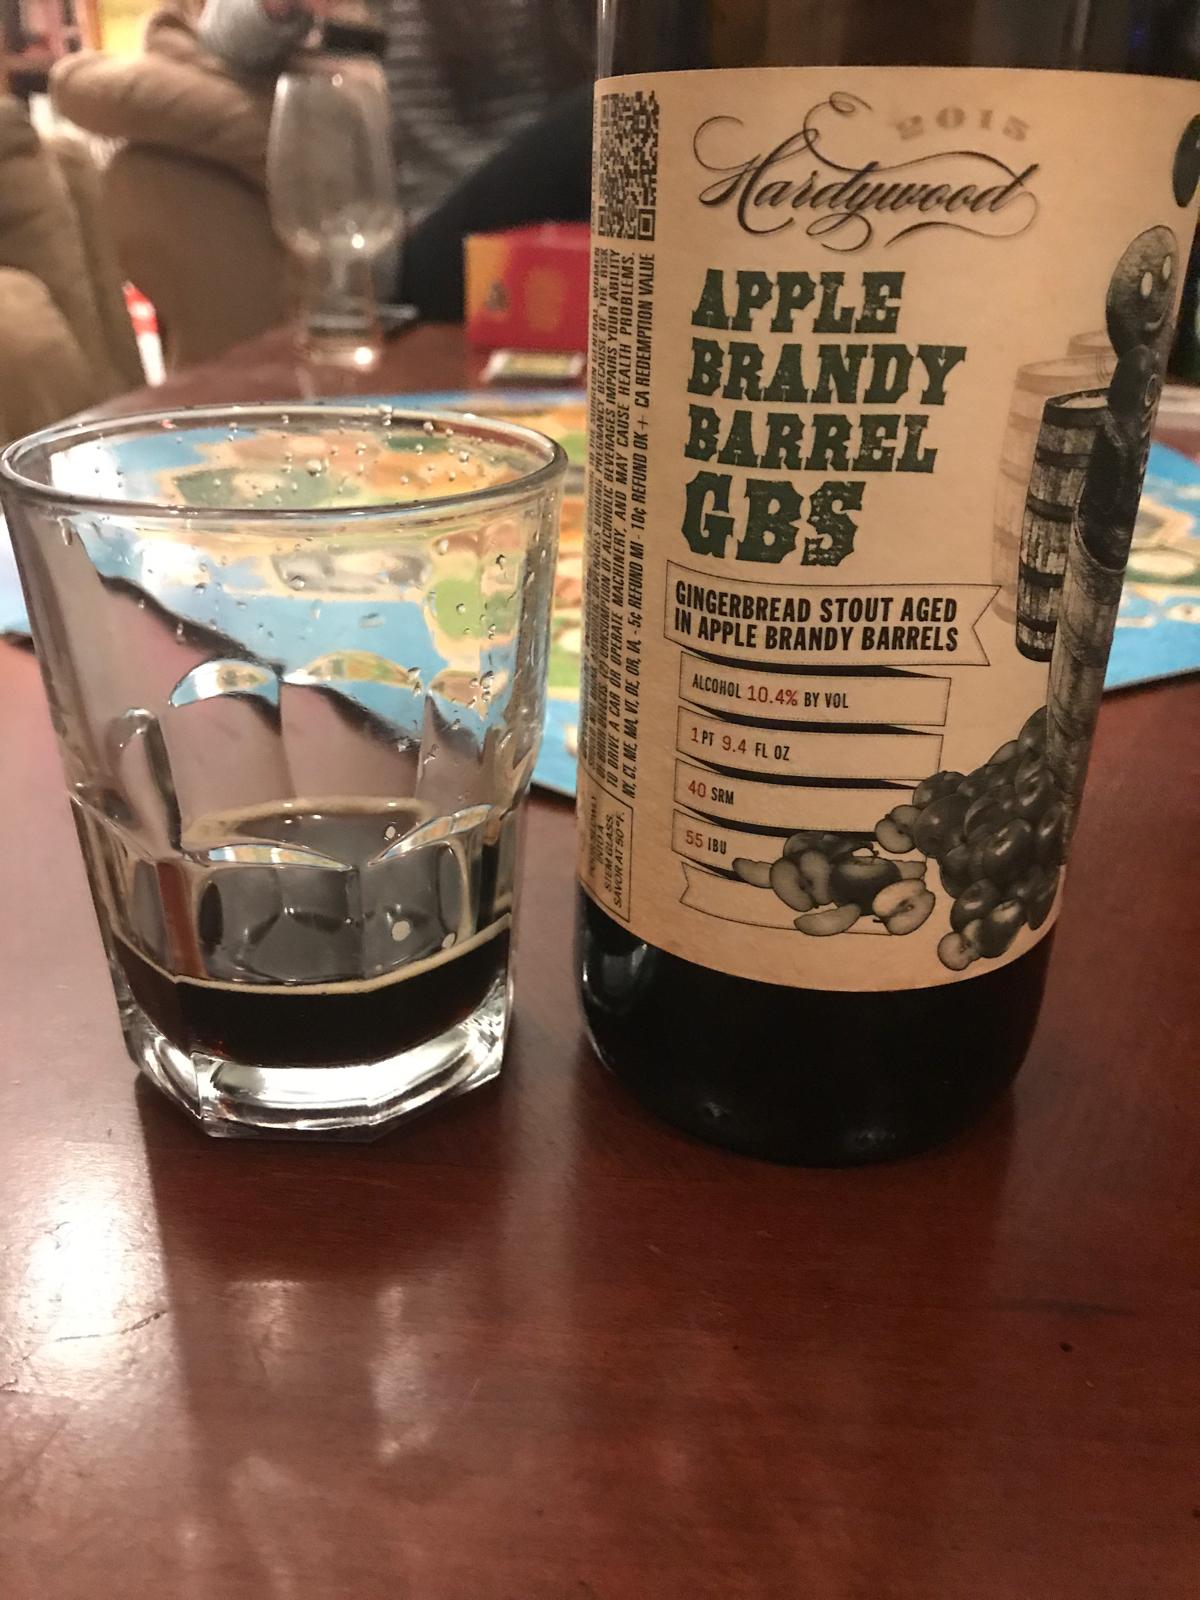 GBS (Apple Brandy Barrel Aged)